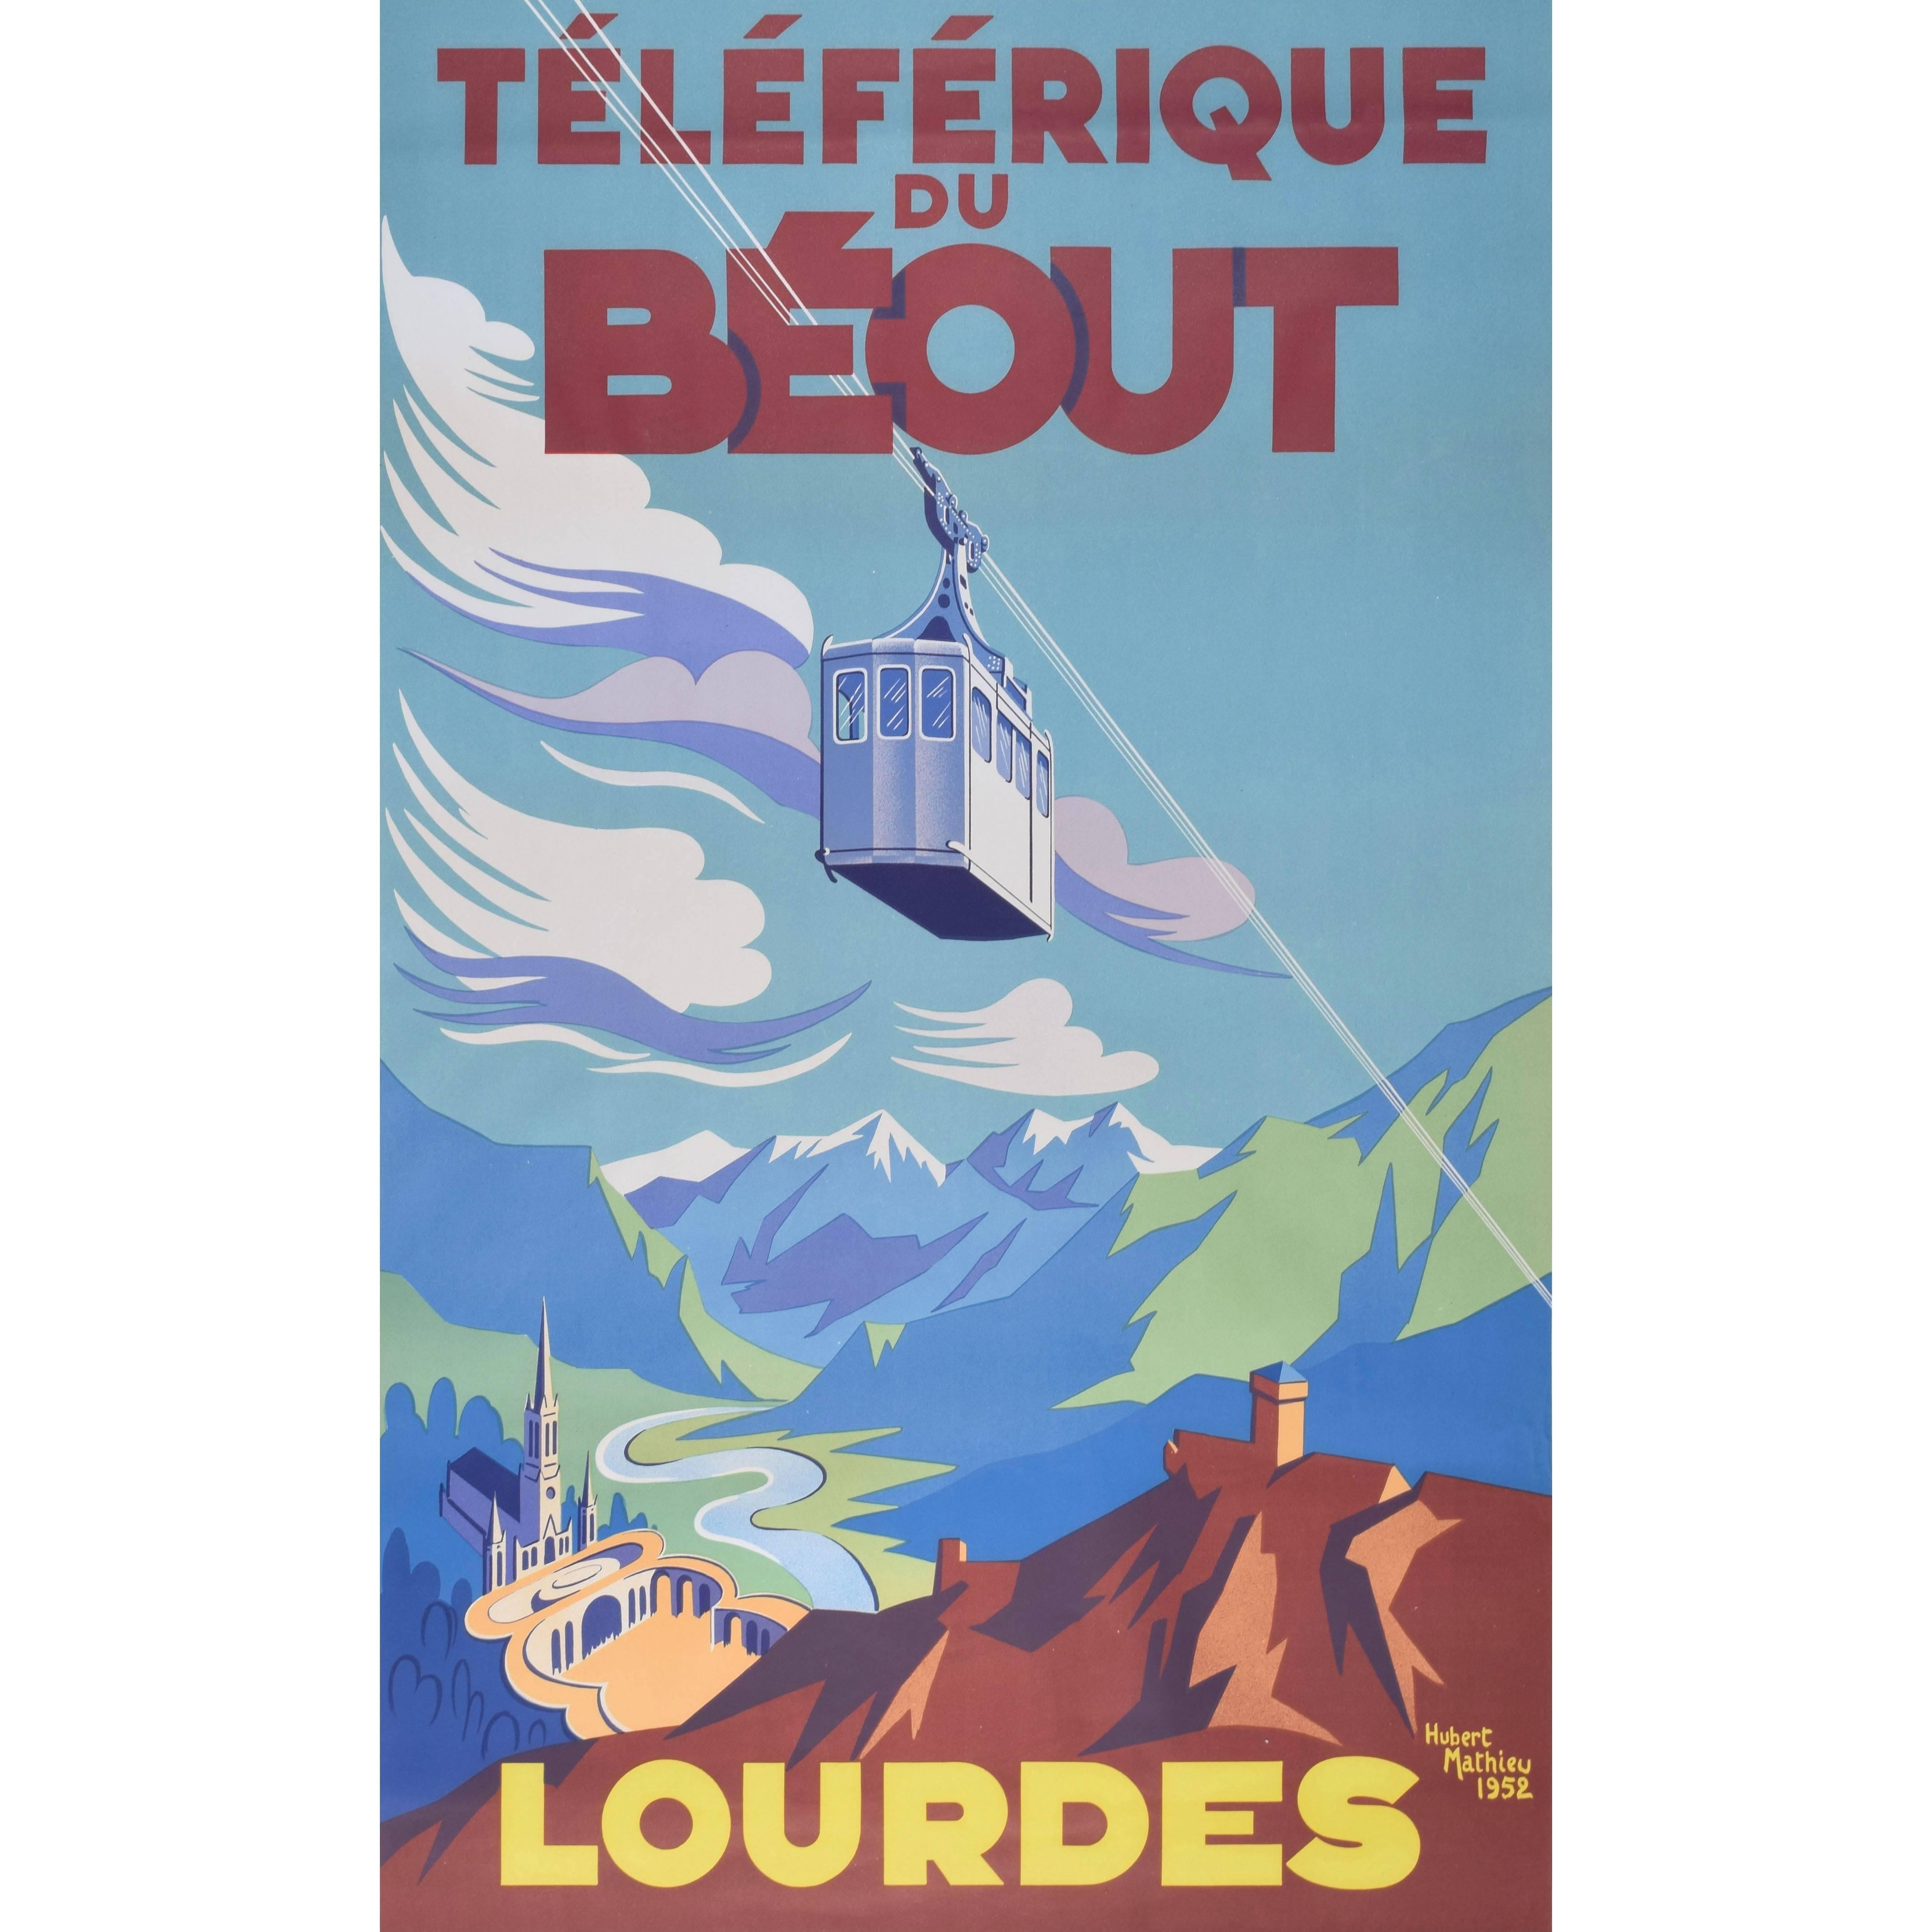 Lourdes 1952 Téléferique du Béout vintage skiing poster by Hubert Mathieu